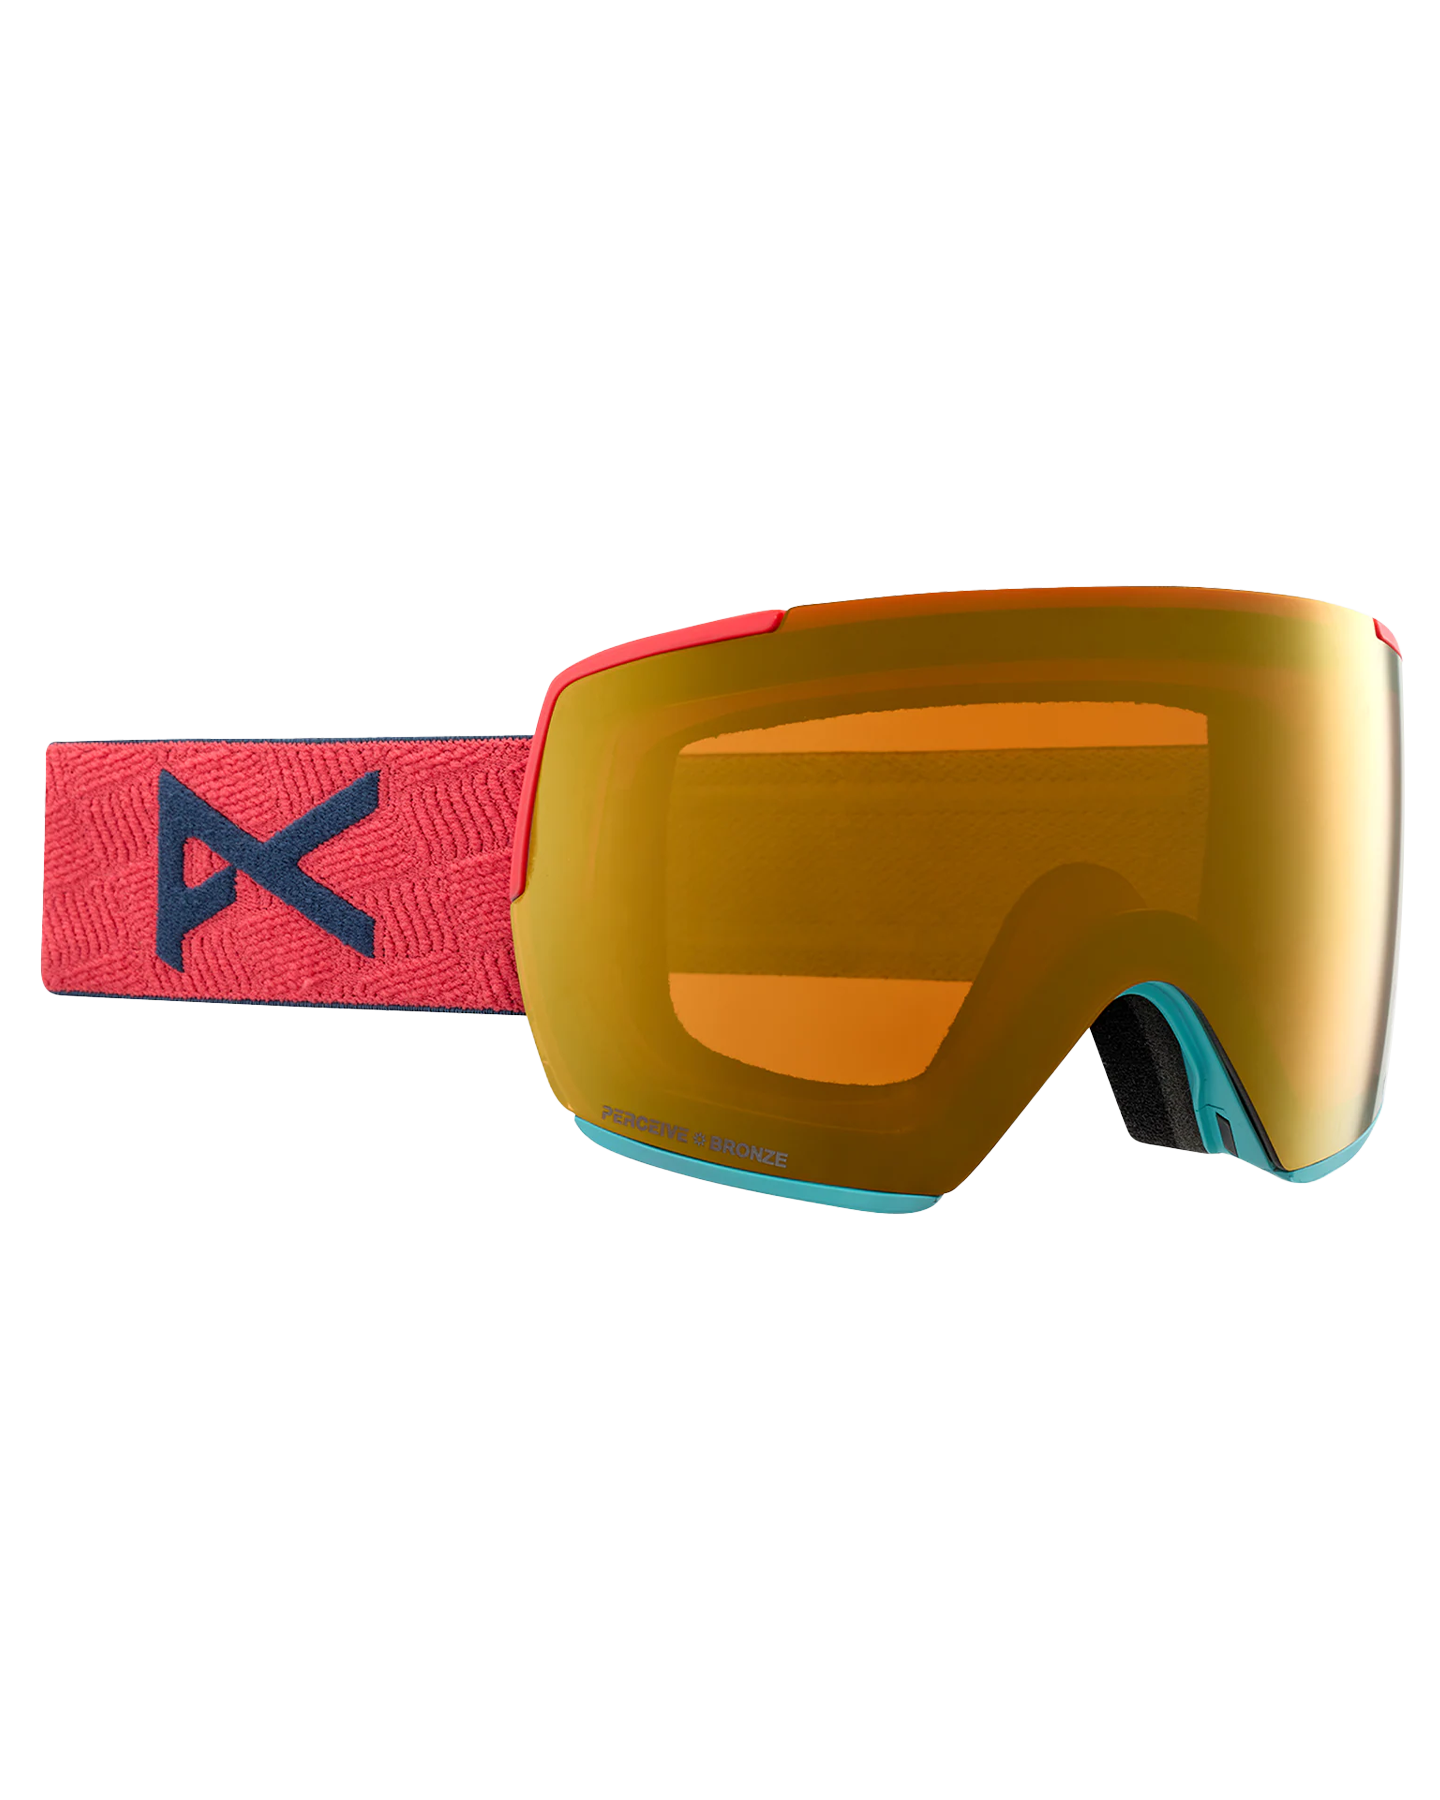 Anon M5 Low Bridge Snow Goggles - Coral/Perceive Sunny Bronze Lens Men's Snow Goggles - Trojan Wake Ski Snow